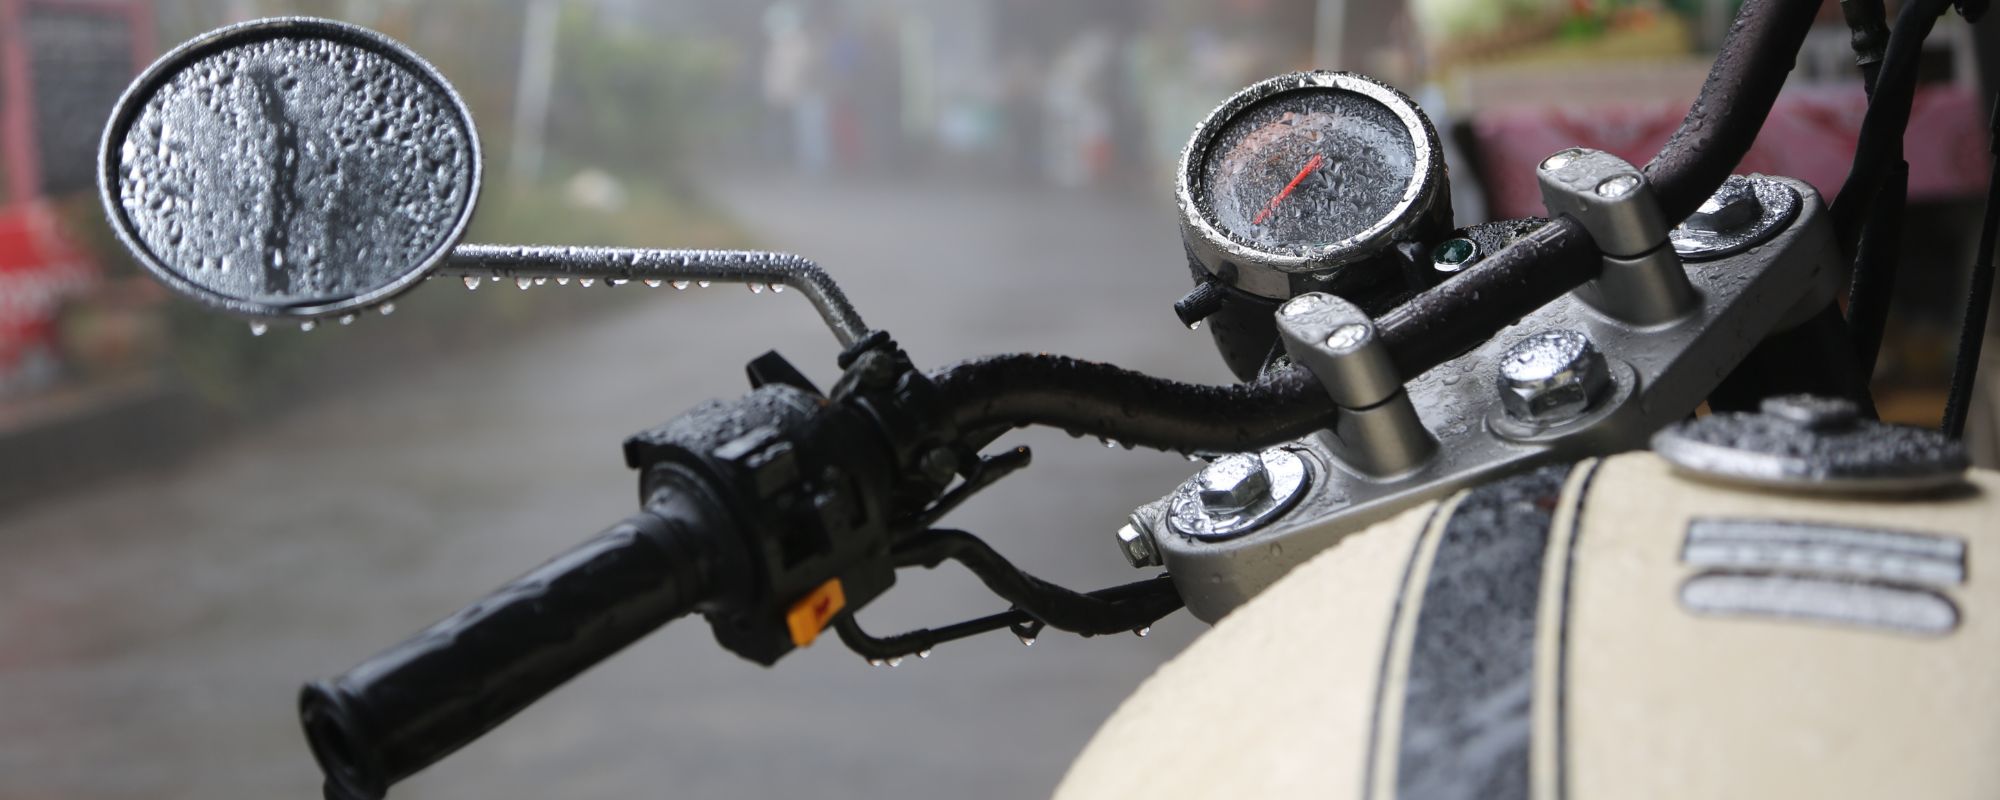 ROKKER - die Schweizer Premium-Brand für Motorradbekleidung - gibt in diesem Blog hilfreiche Tipps rund um das Thema Motorrad im Regen fahren.